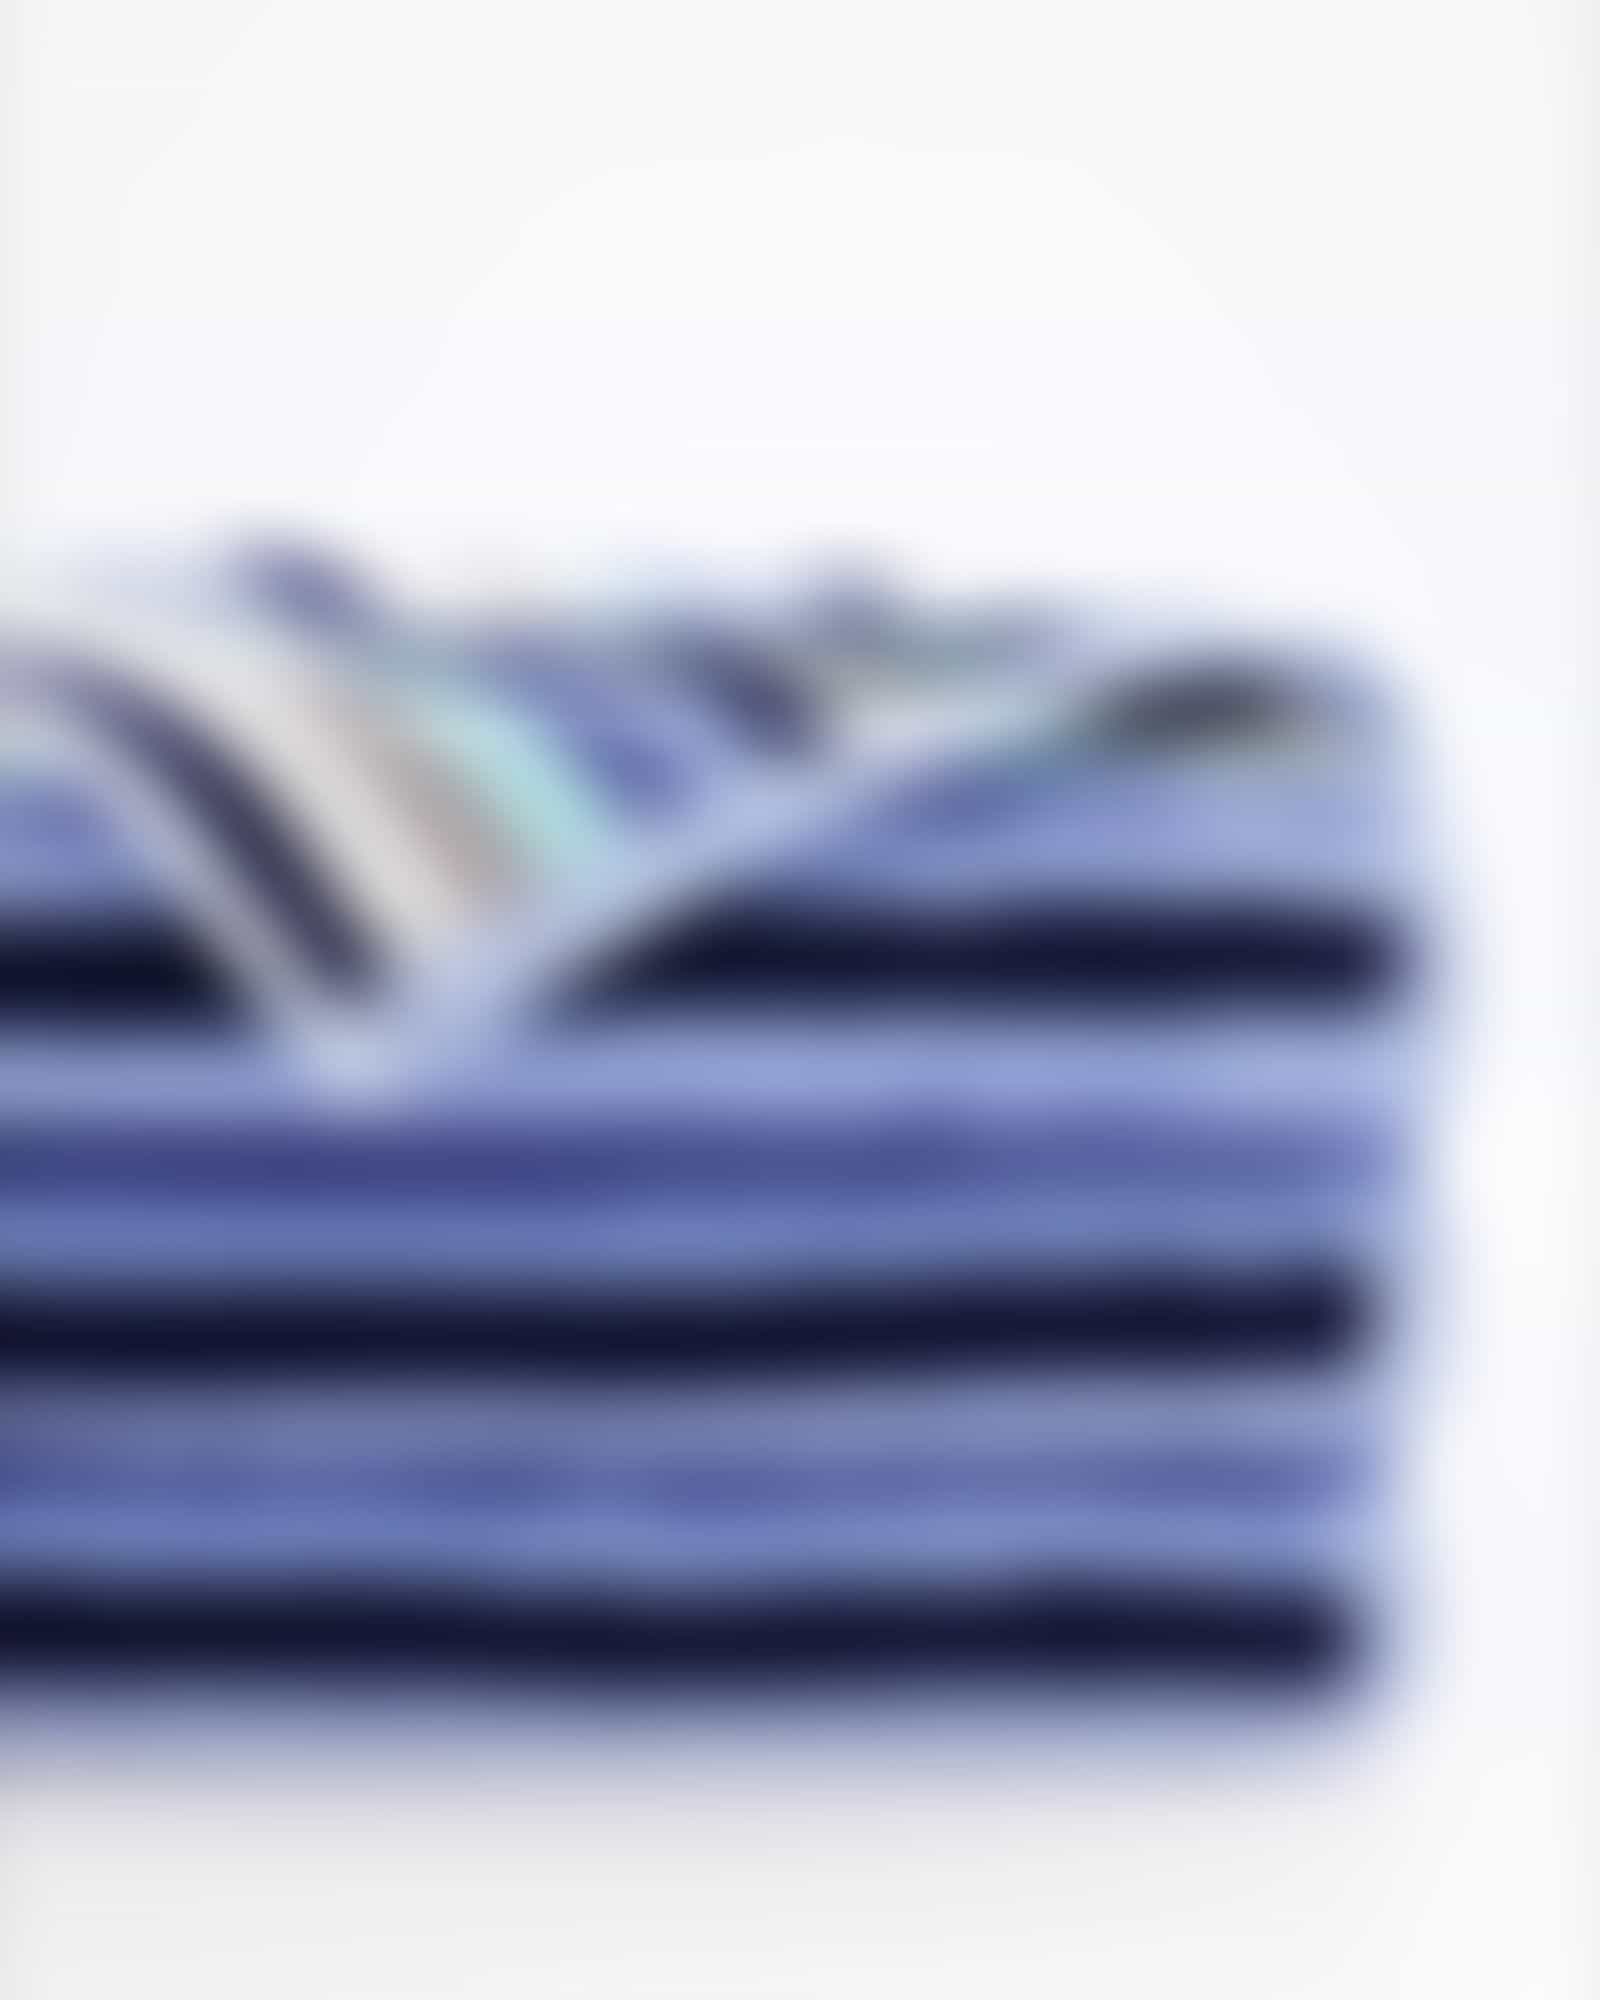 Cawö Handtücher Shades Streifen 6235 - Farbe: aqua - 11 - Waschhandschuh 16x22 cm